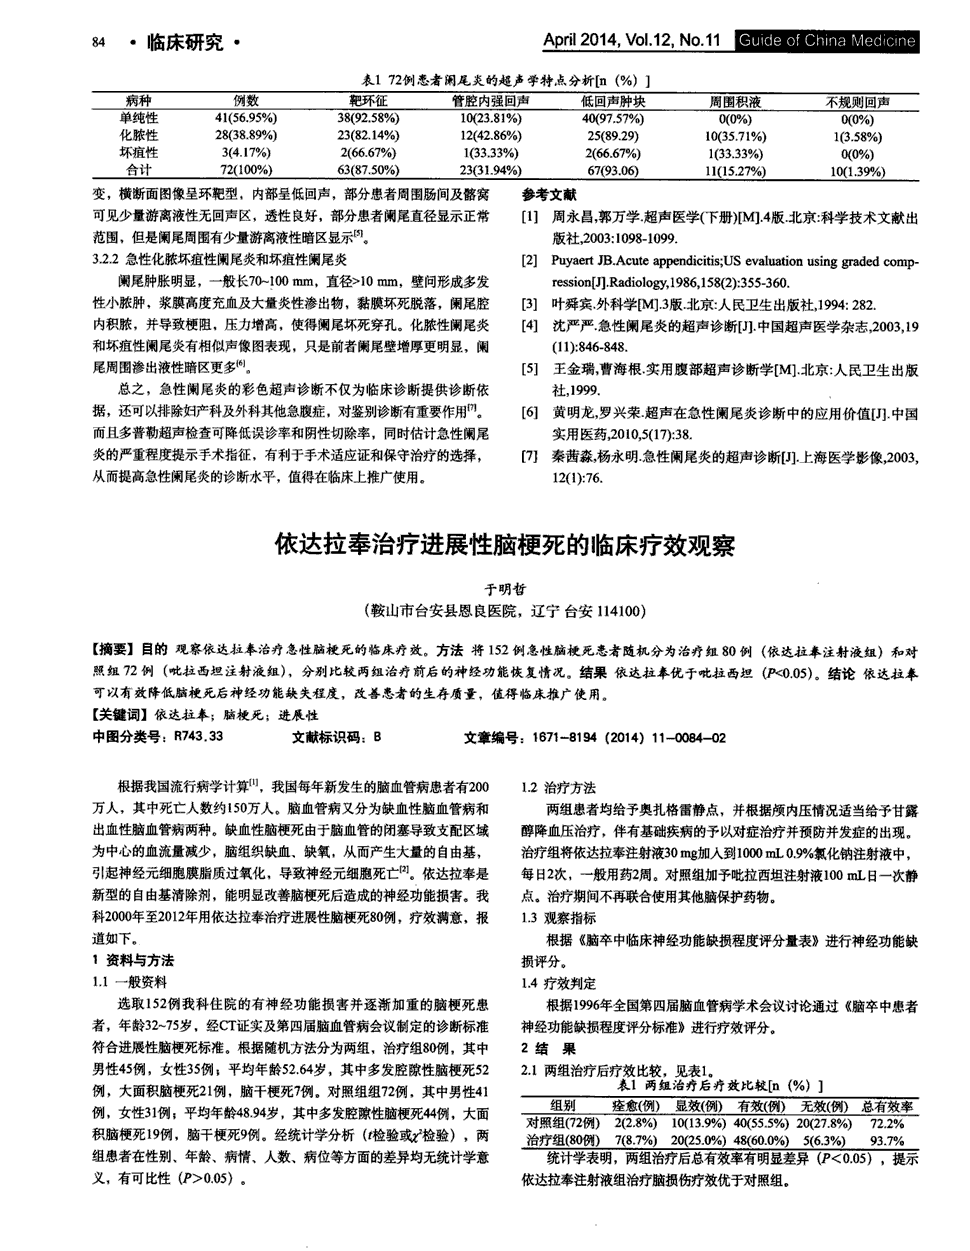 中国期刊网周家通信公司采用贝伐珠单抗联合化疗方案